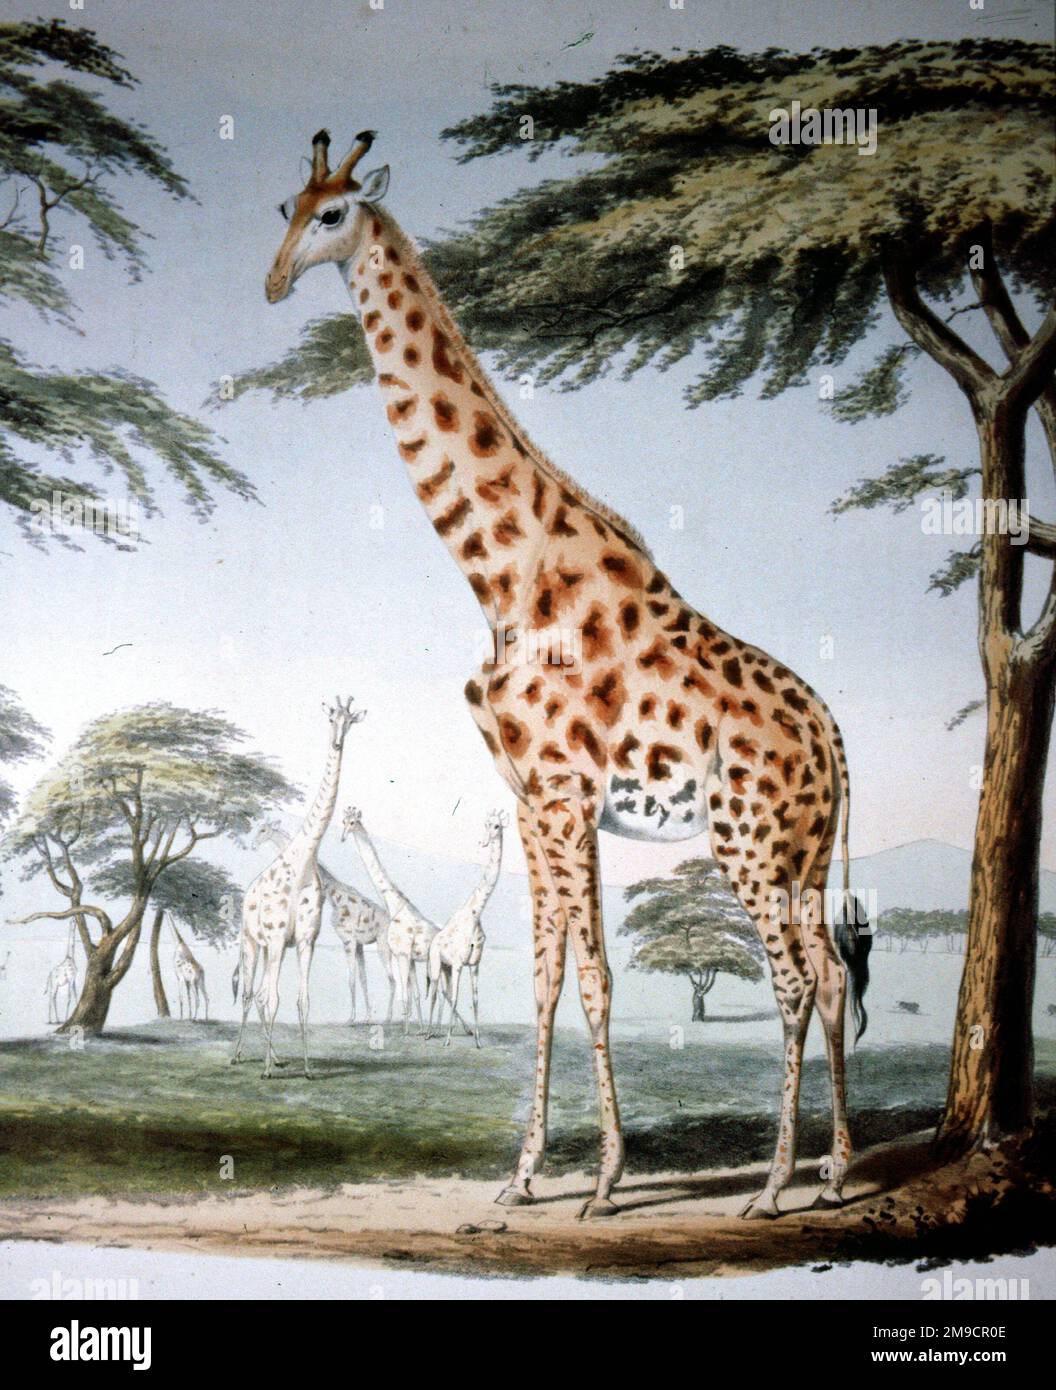 Porträts von Wild und wilden Tieren des südlichen Afrika - Giraffe Stockfoto